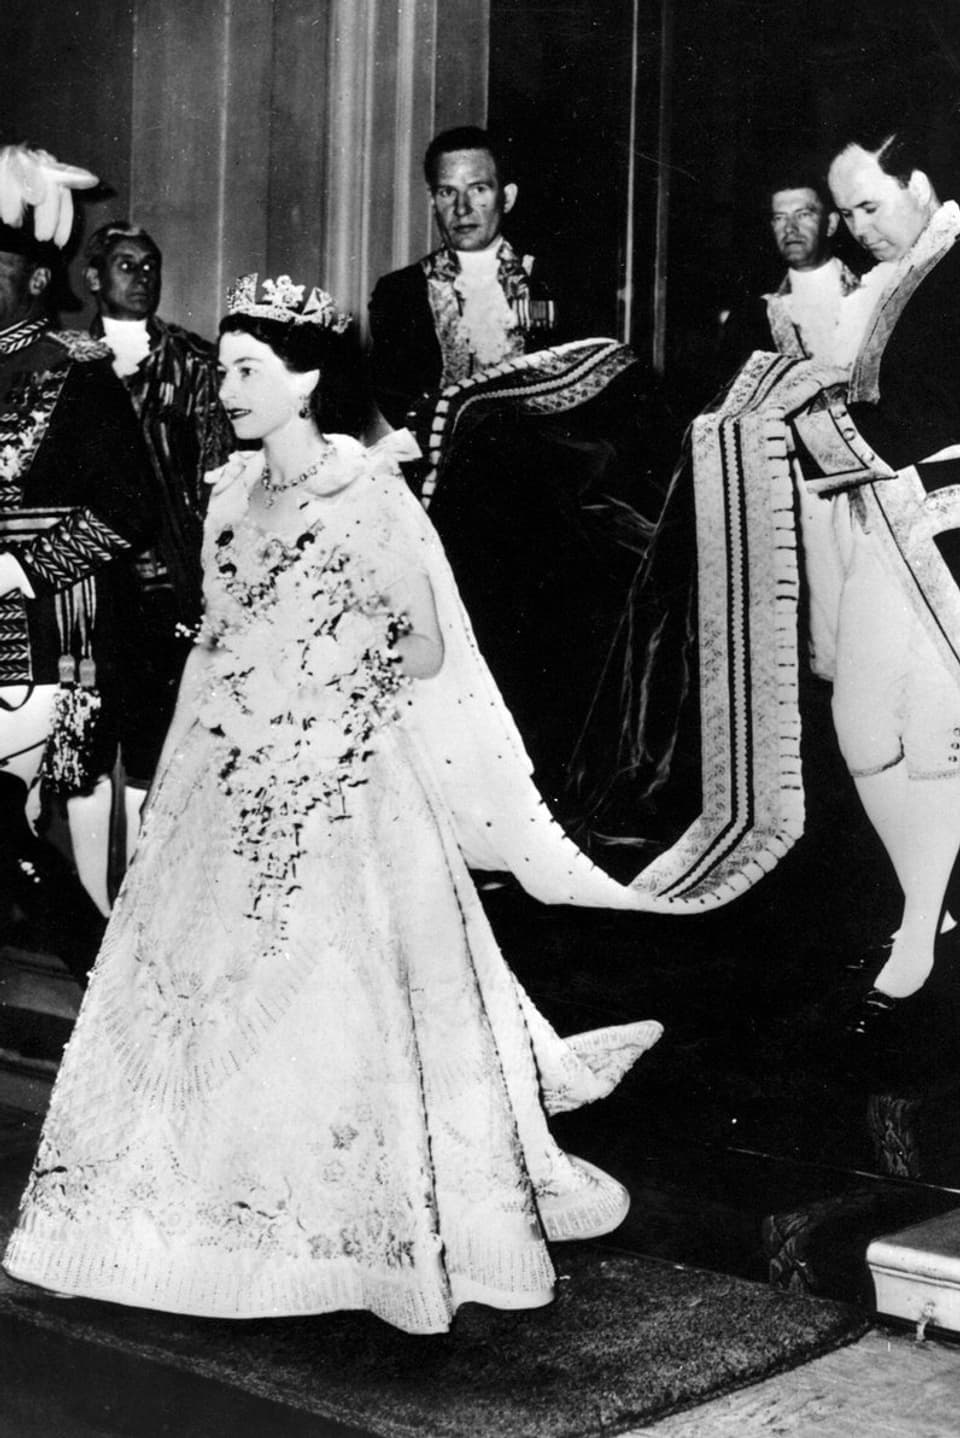 Die Queen schreitet bei ihrer Krönung aus dem Buckingham Palast. Sie trägt ein helles Kleid mit Stickereien, die Krone und einen grossen Blumenstrauss.